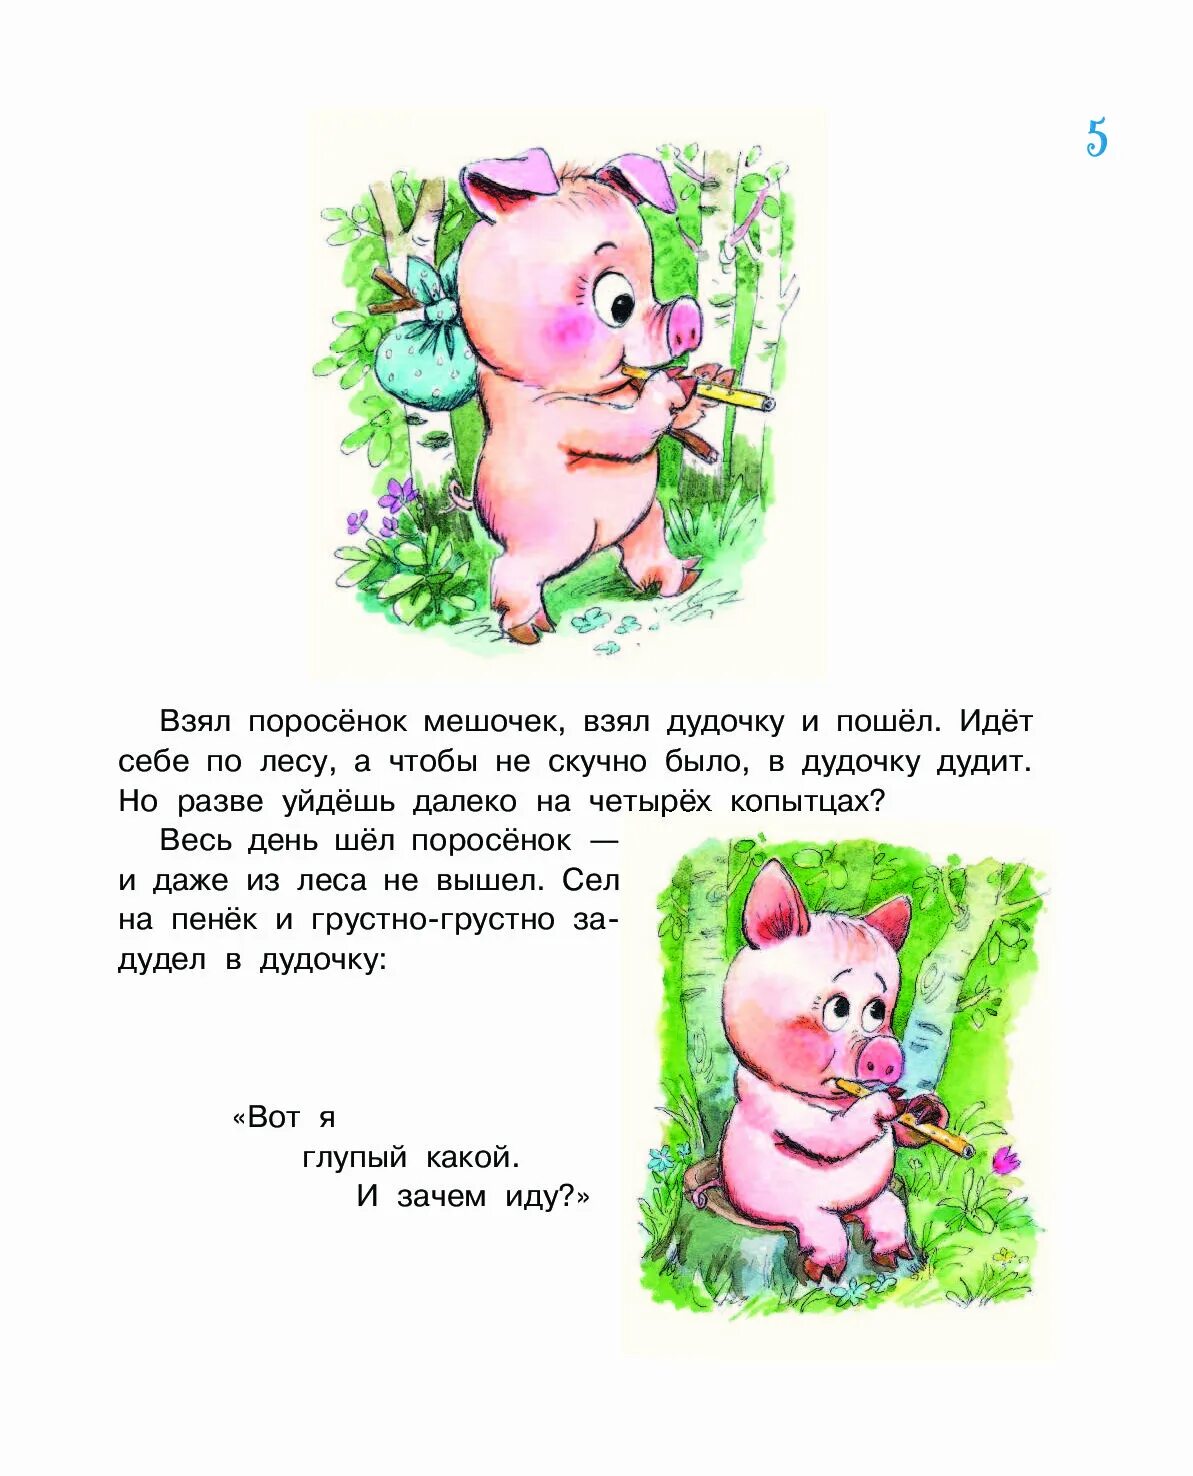 Сигма свинка шакалит текст. Загадка про свинку для детей. Загадка про свинью для детей. Стишок про хрюшку для малышей. Загадка про поросенка для детей.